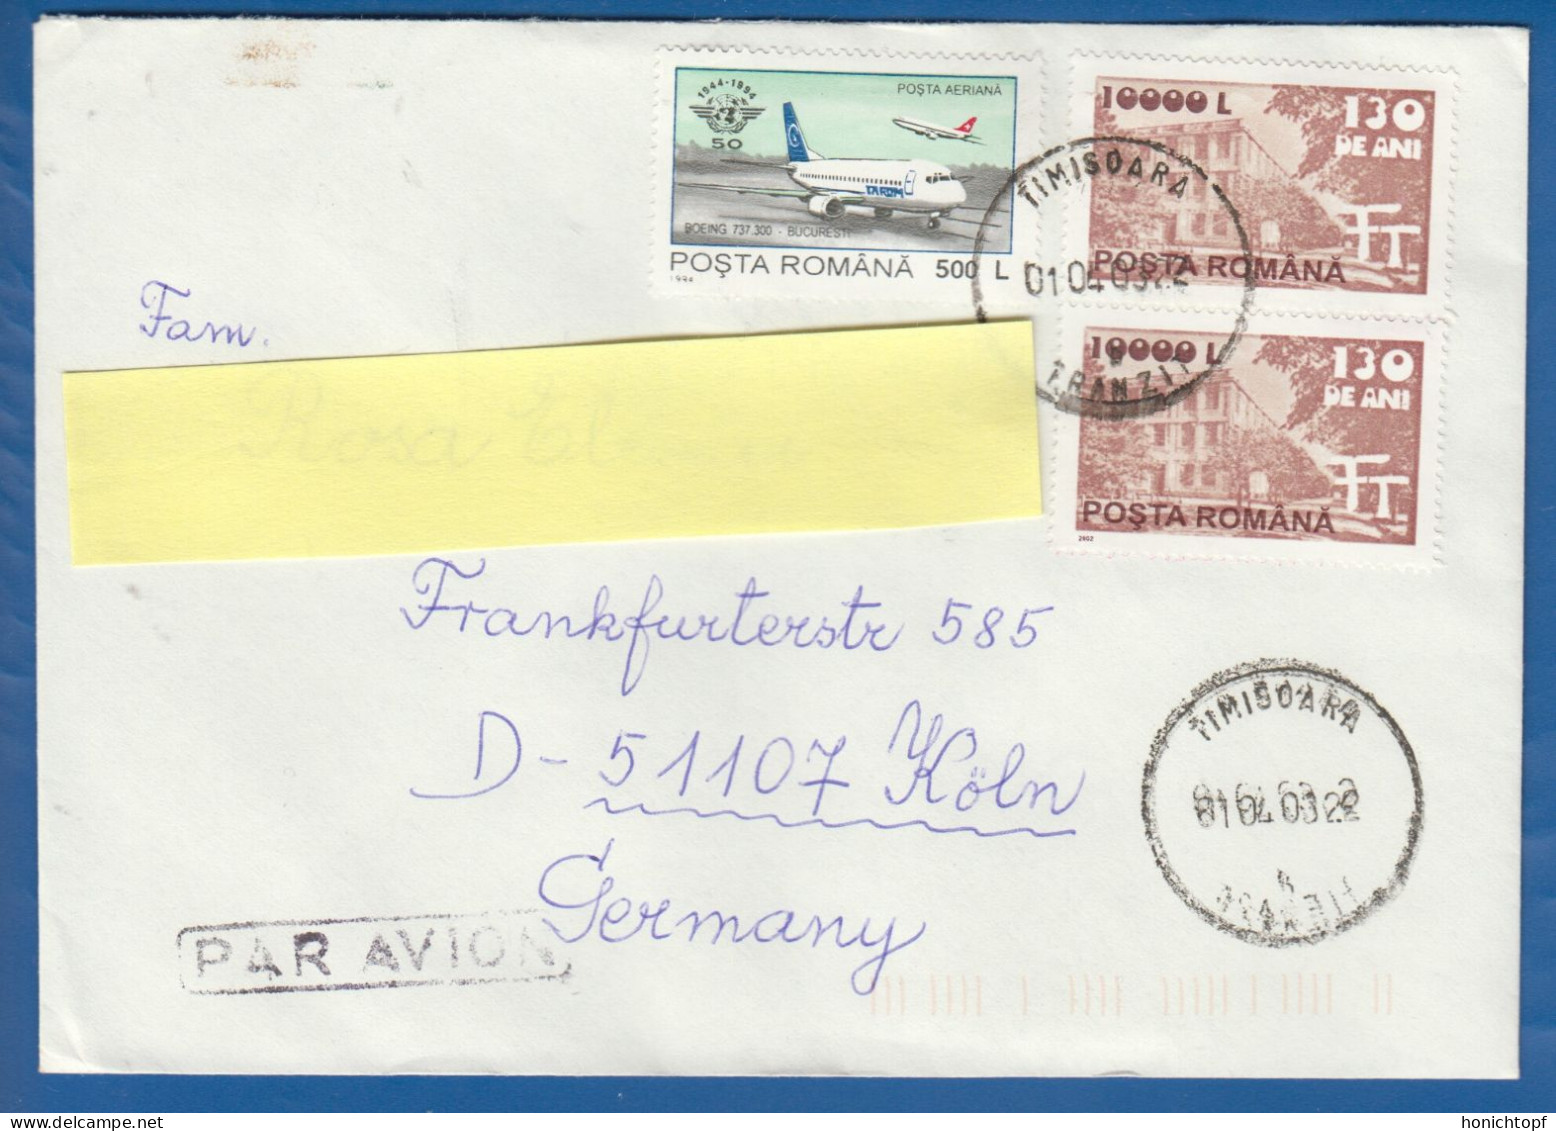 Rumänien; Brief Infla 2003; Timisoara; Romania - Lettres & Documents